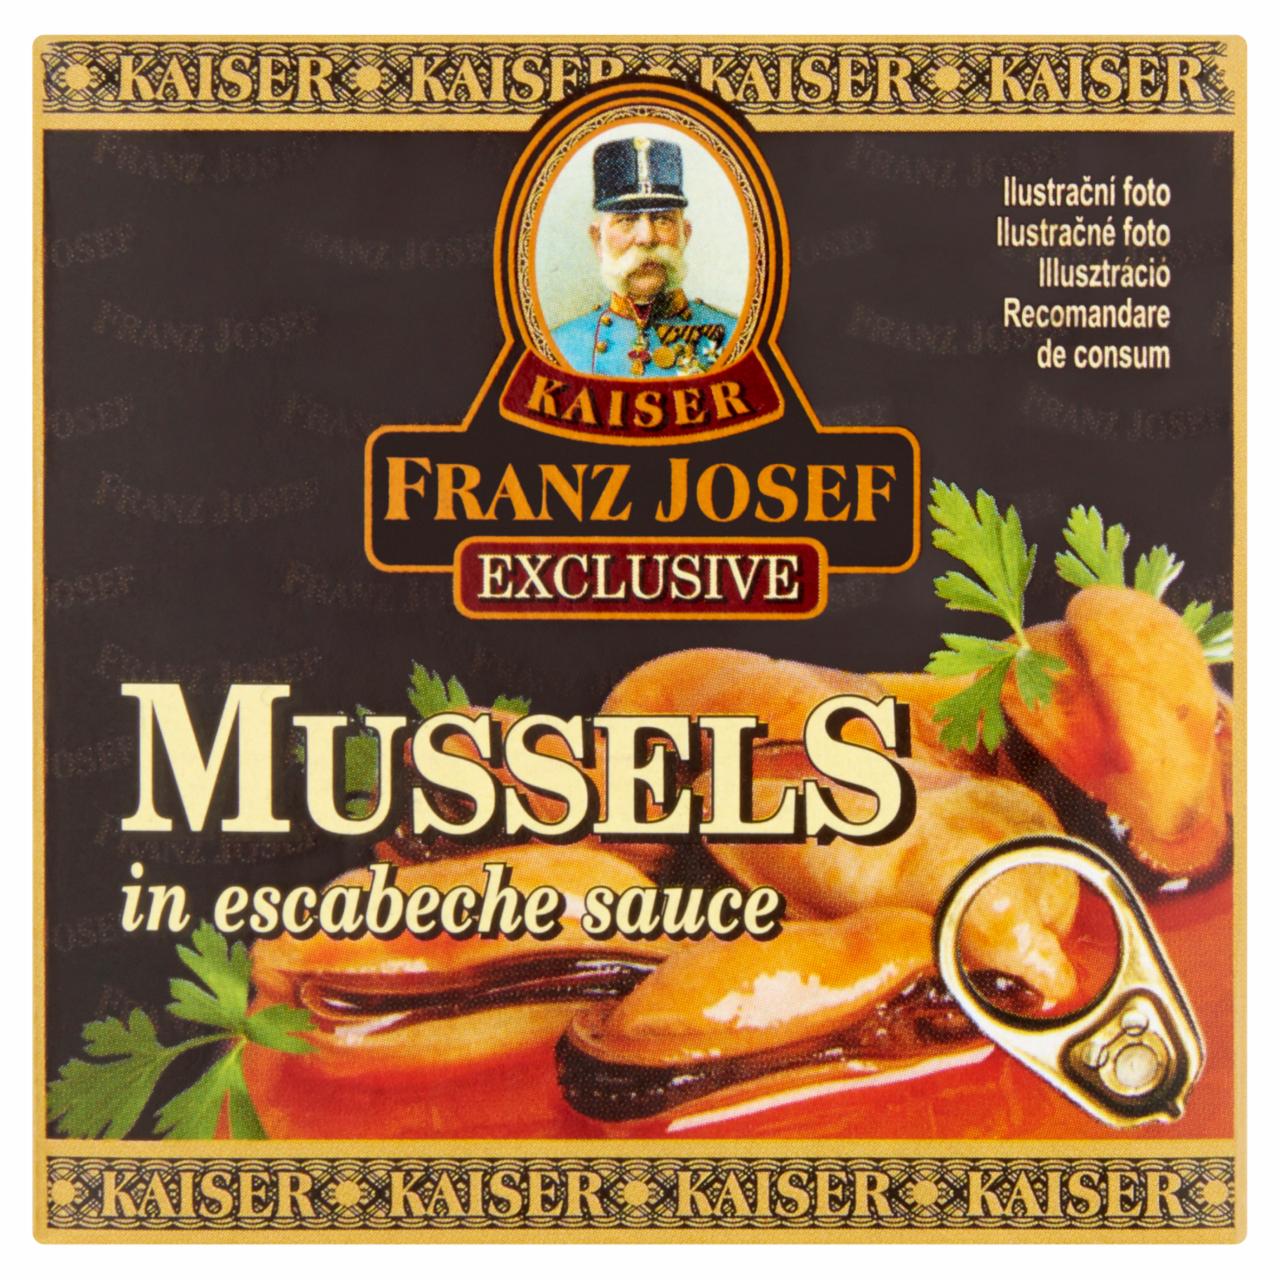 Képek - Kaiser Franz Josef Exclusive kagyló escabeche szószban 80 g